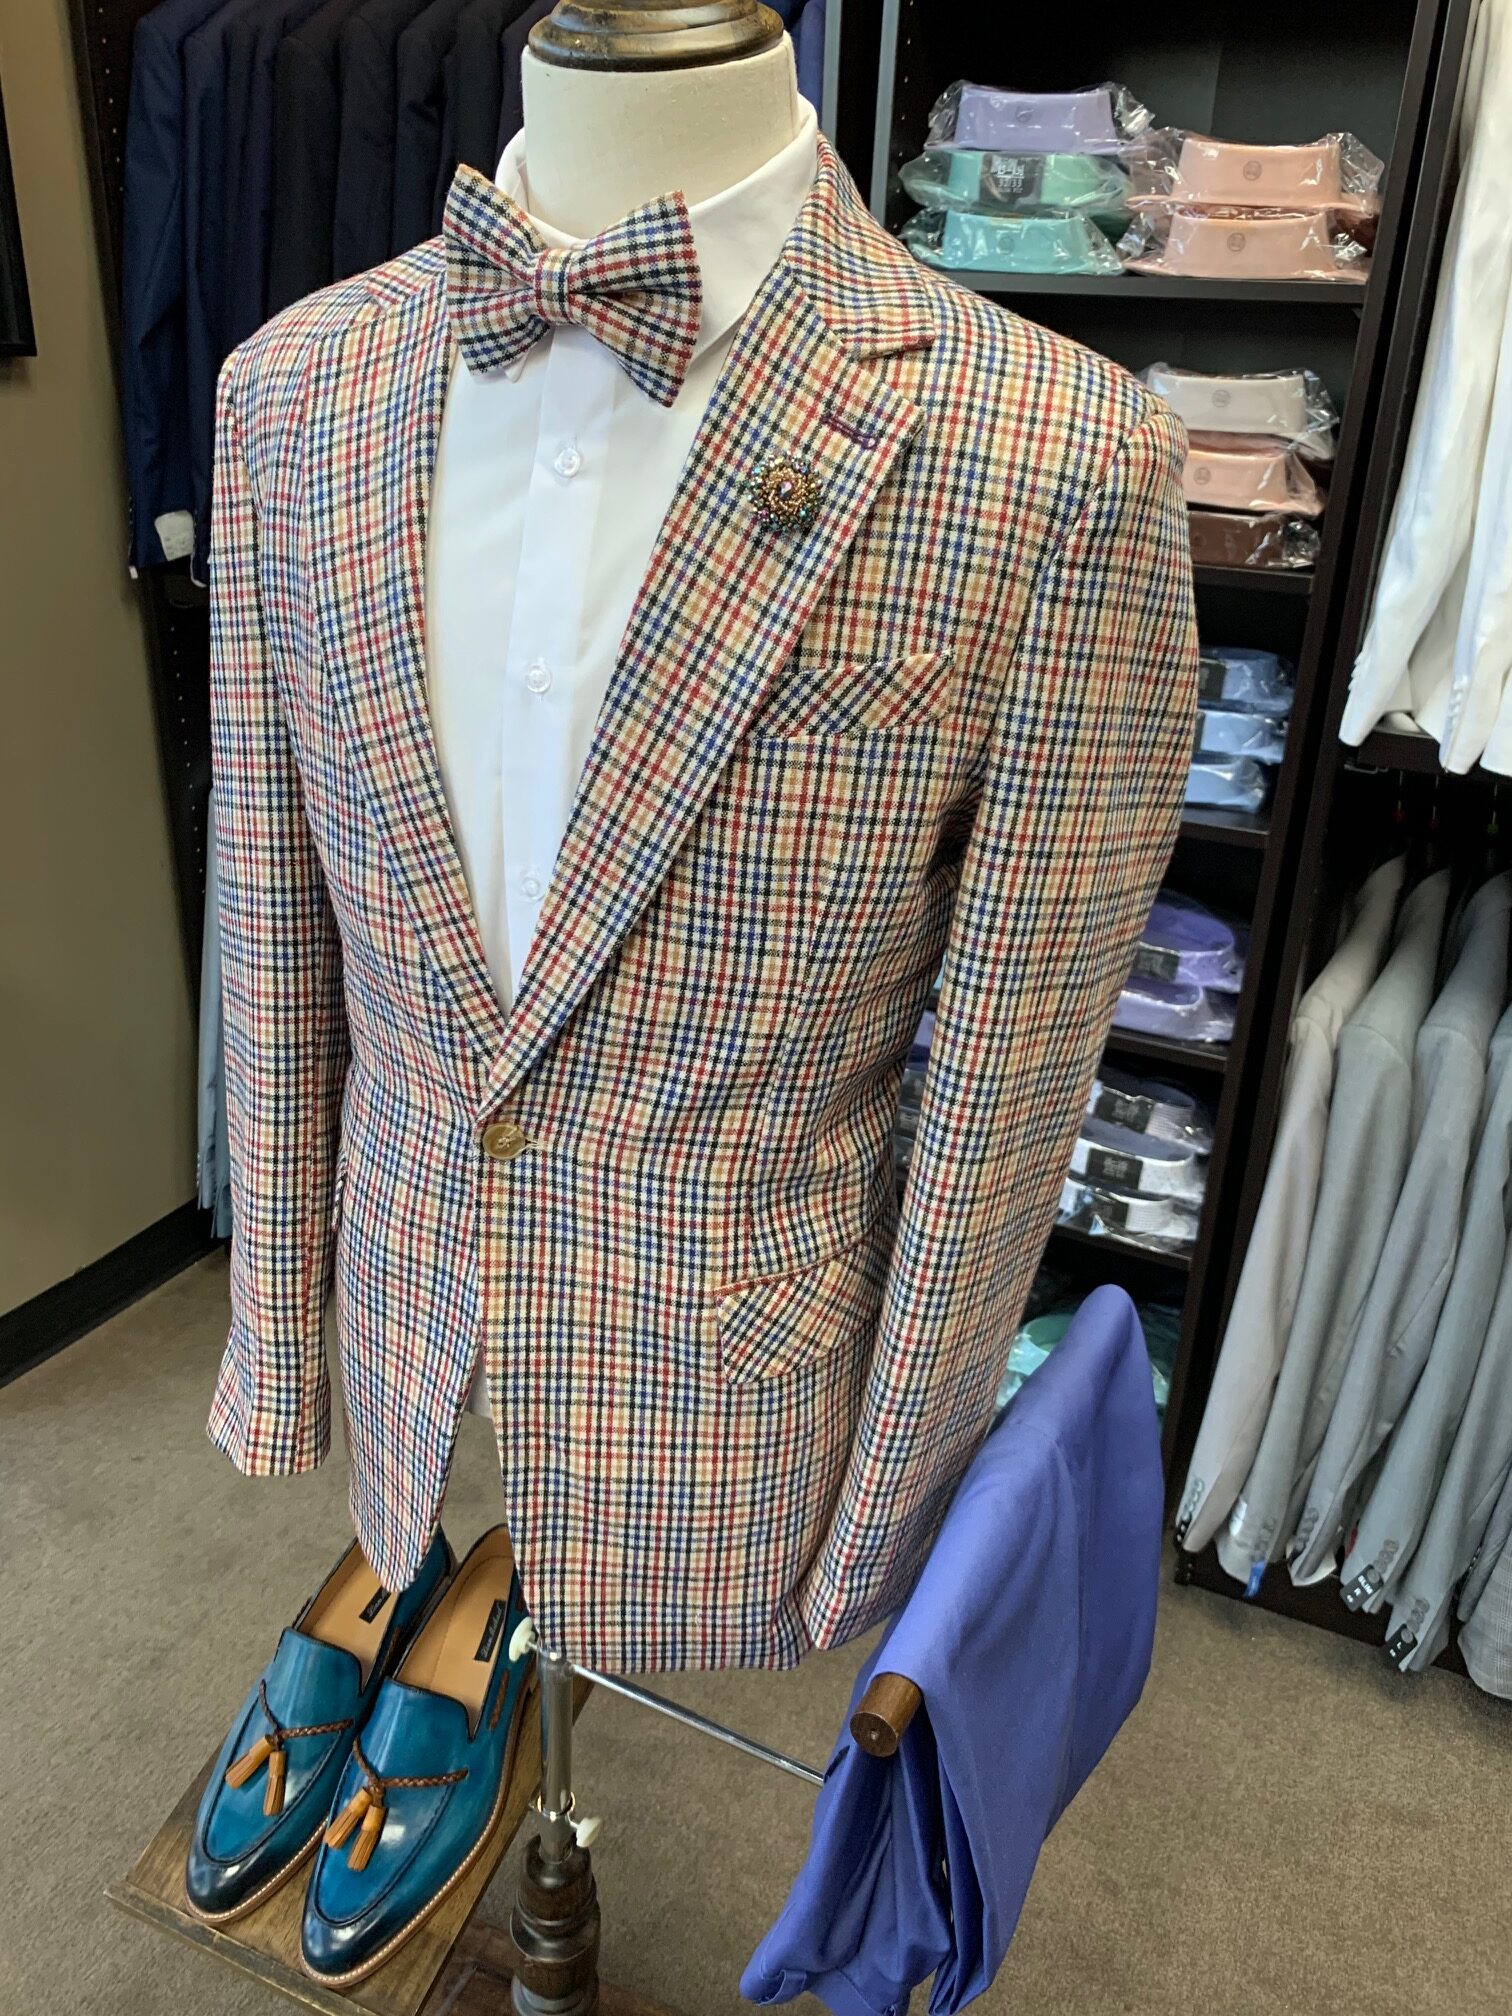 Liam Michael Suit Collection # 3 - The Gentlemens Closet